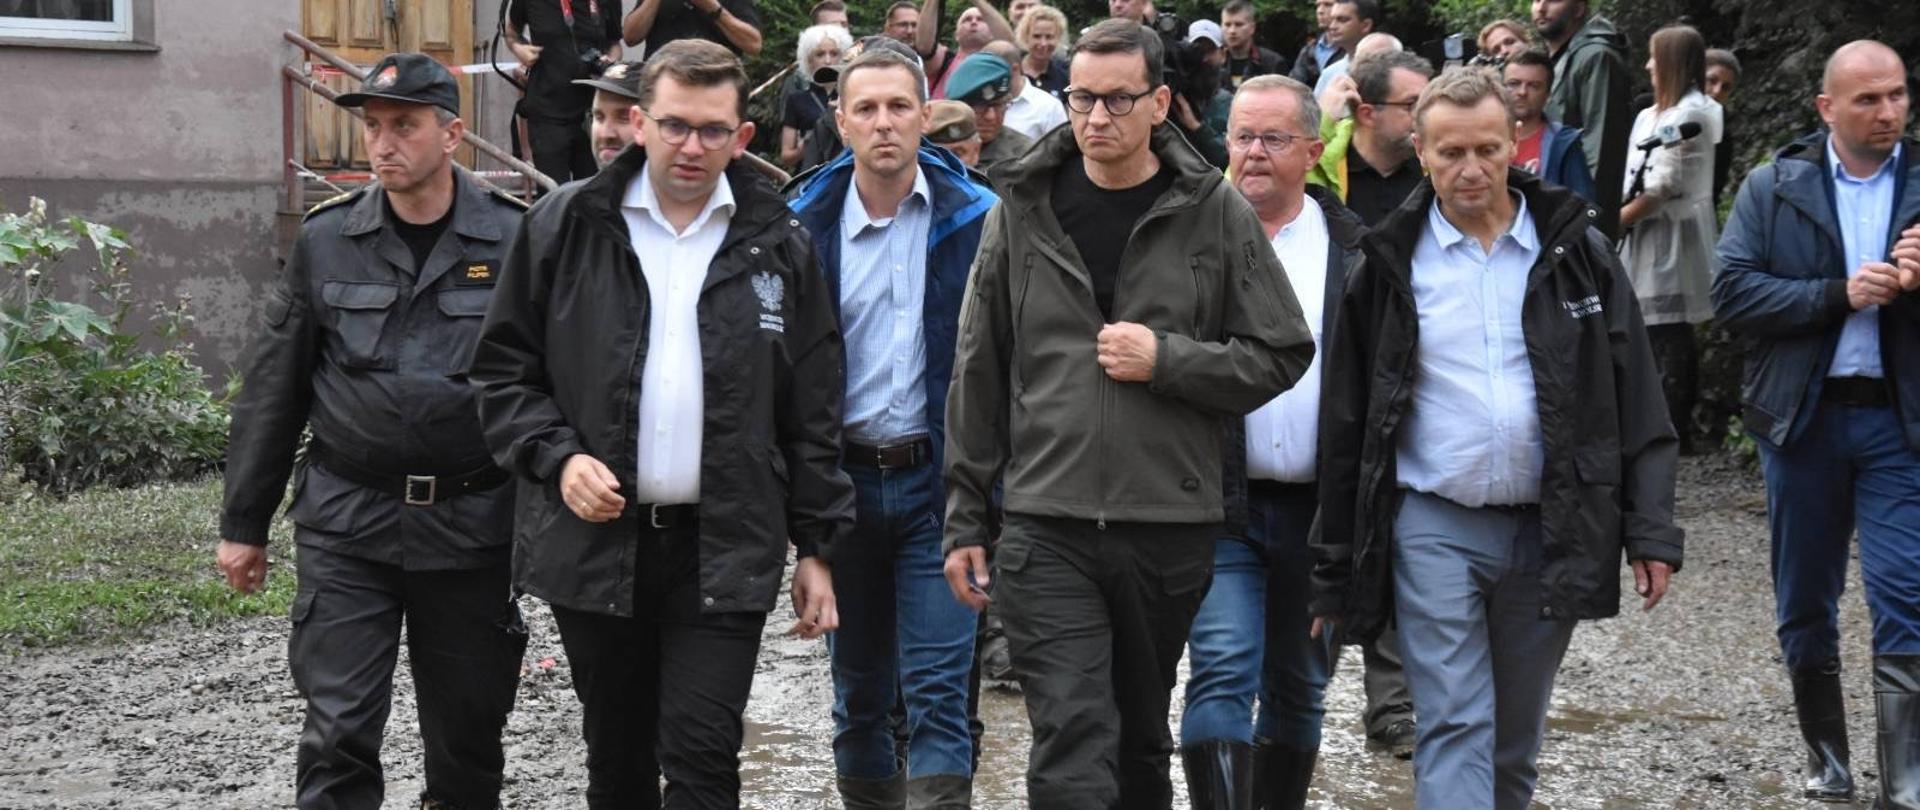 Na pierwszym planie widać Wojewodą Małopolskiego, Prezesa Rady Ministrów Małopolskiego Komendanta PSP w trakcie wizytacji zalanych posesji w pow. myślenickim 